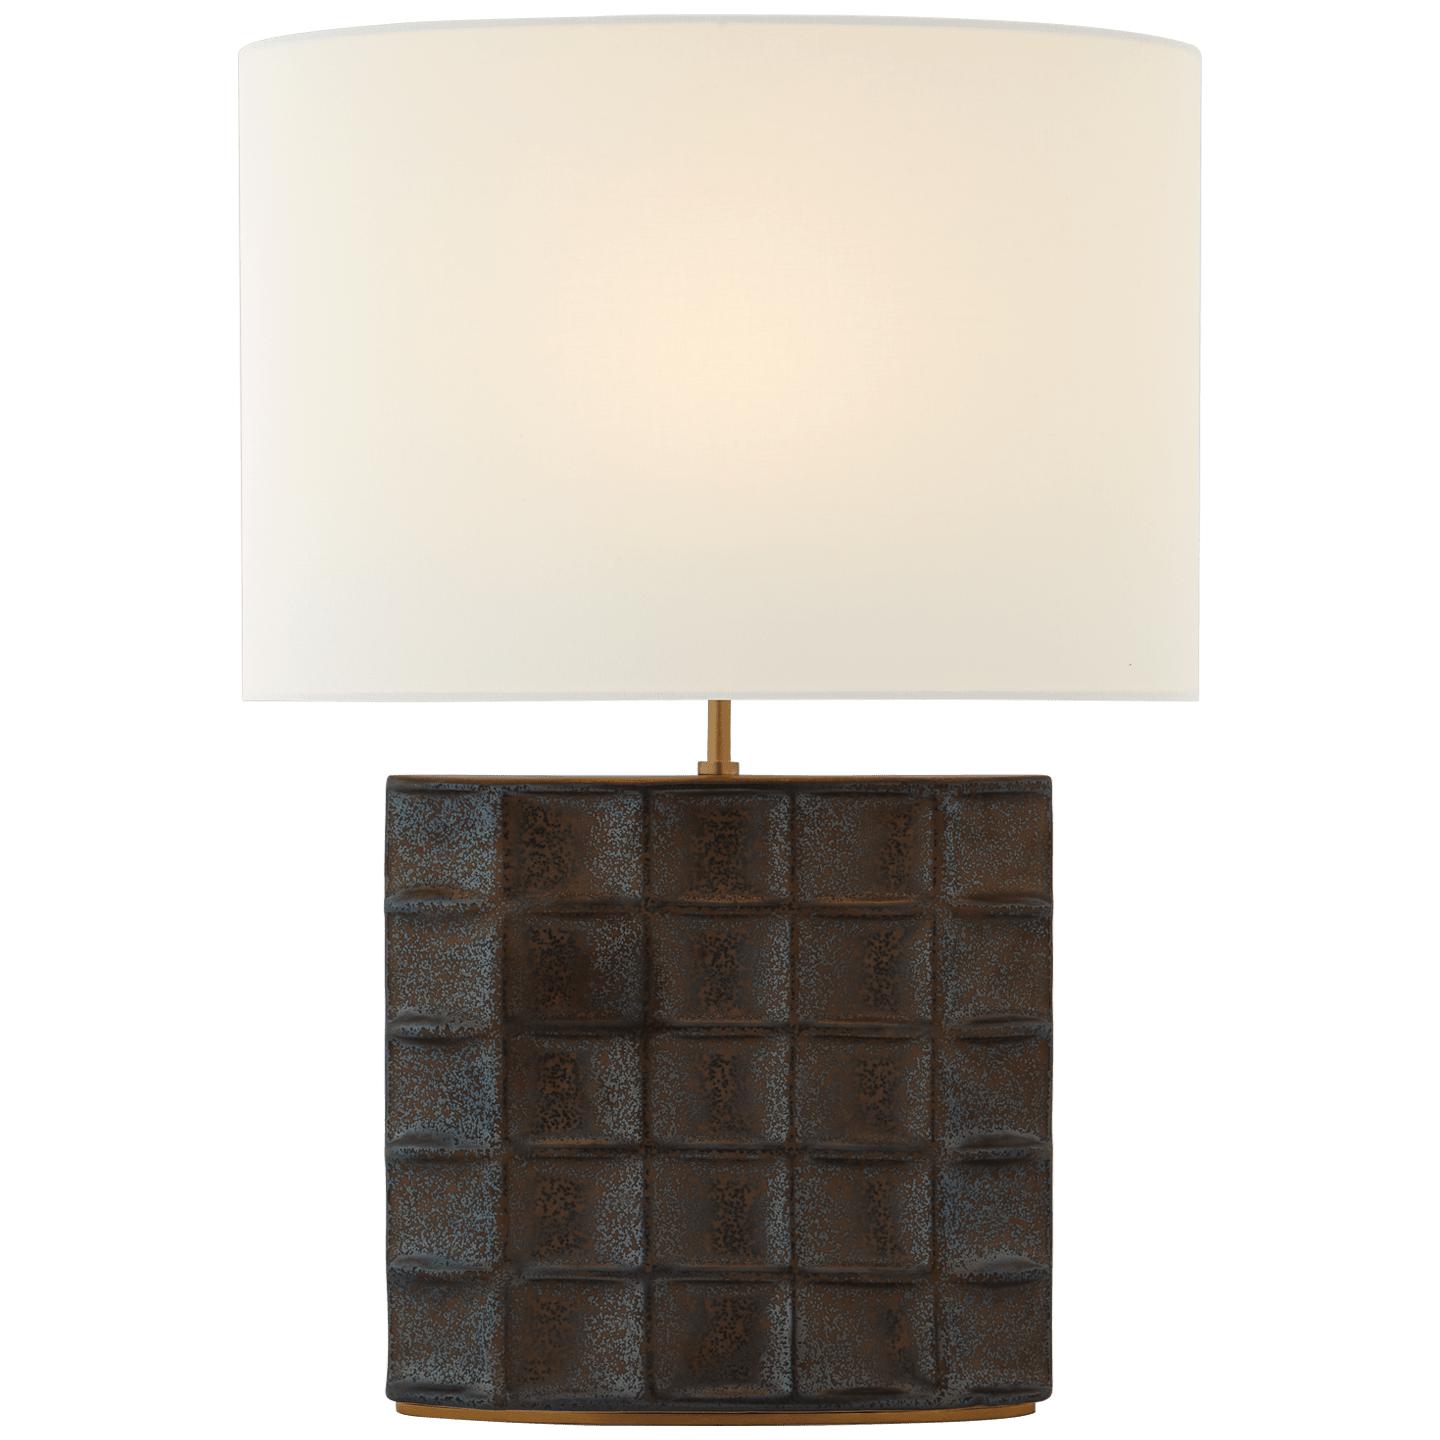 Купить Настольная лампа Struttura Medium Table Lamp в интернет-магазине roooms.ru